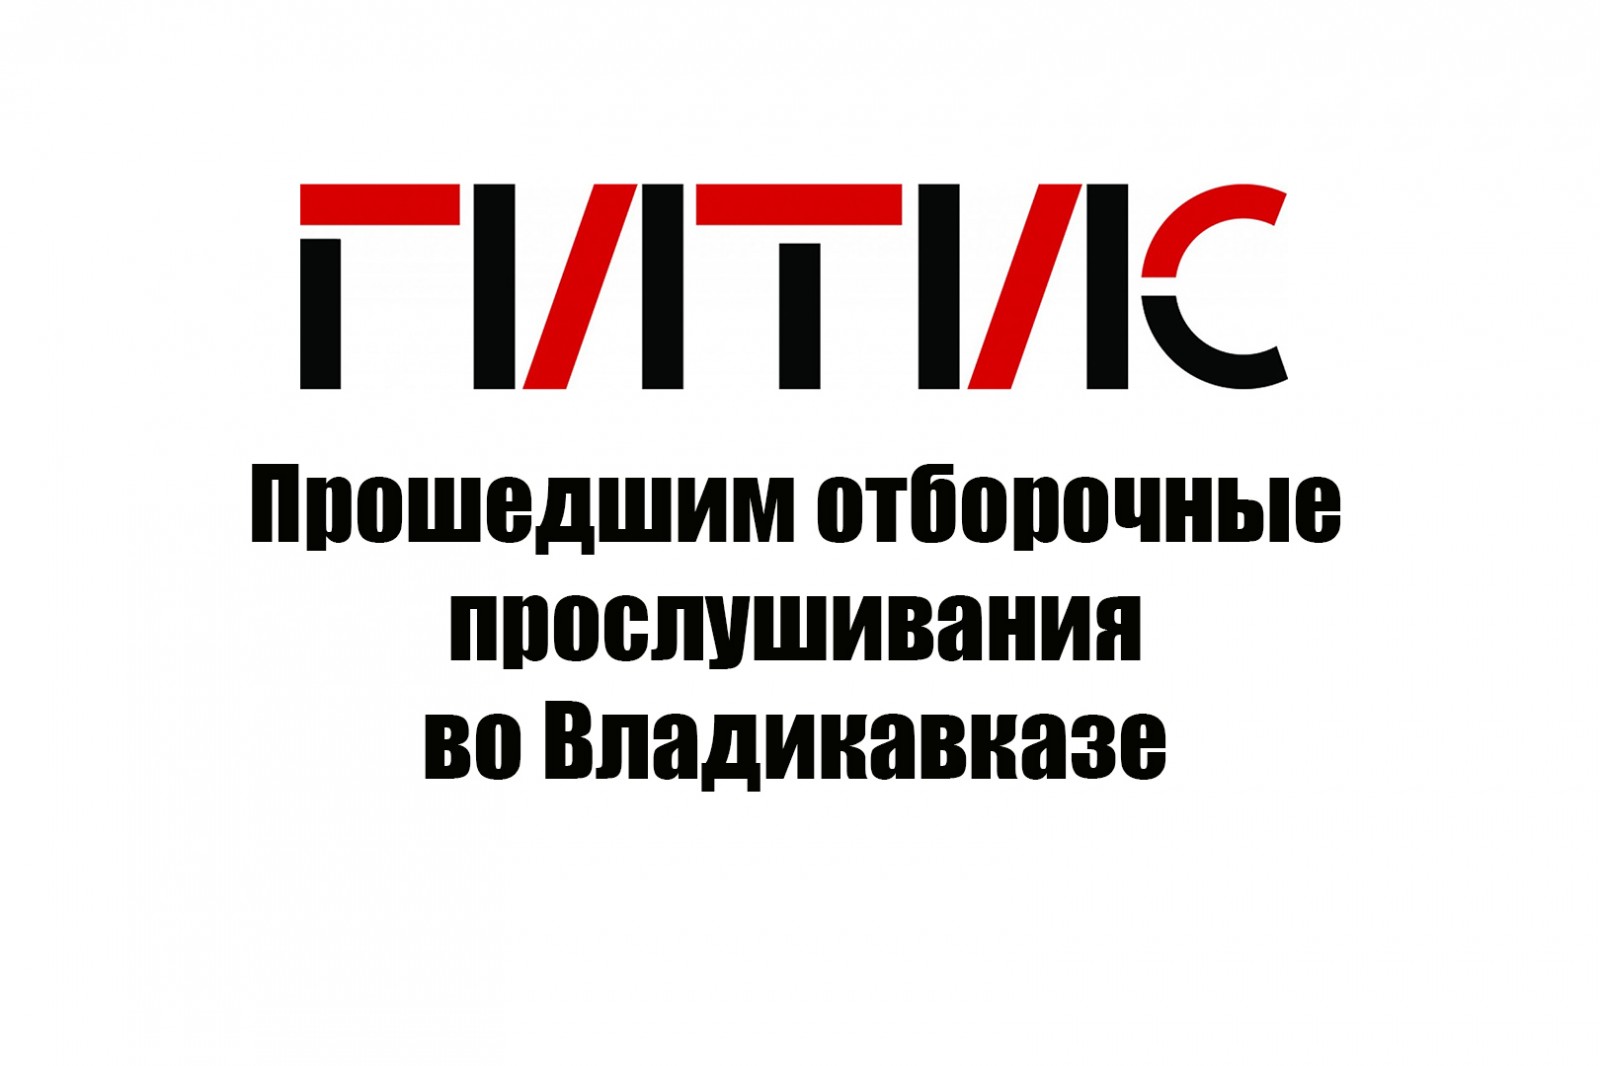 Список прошедших отборочные прослушивания во Владикавказе в рамках проекта «ГИТИС – Юг»